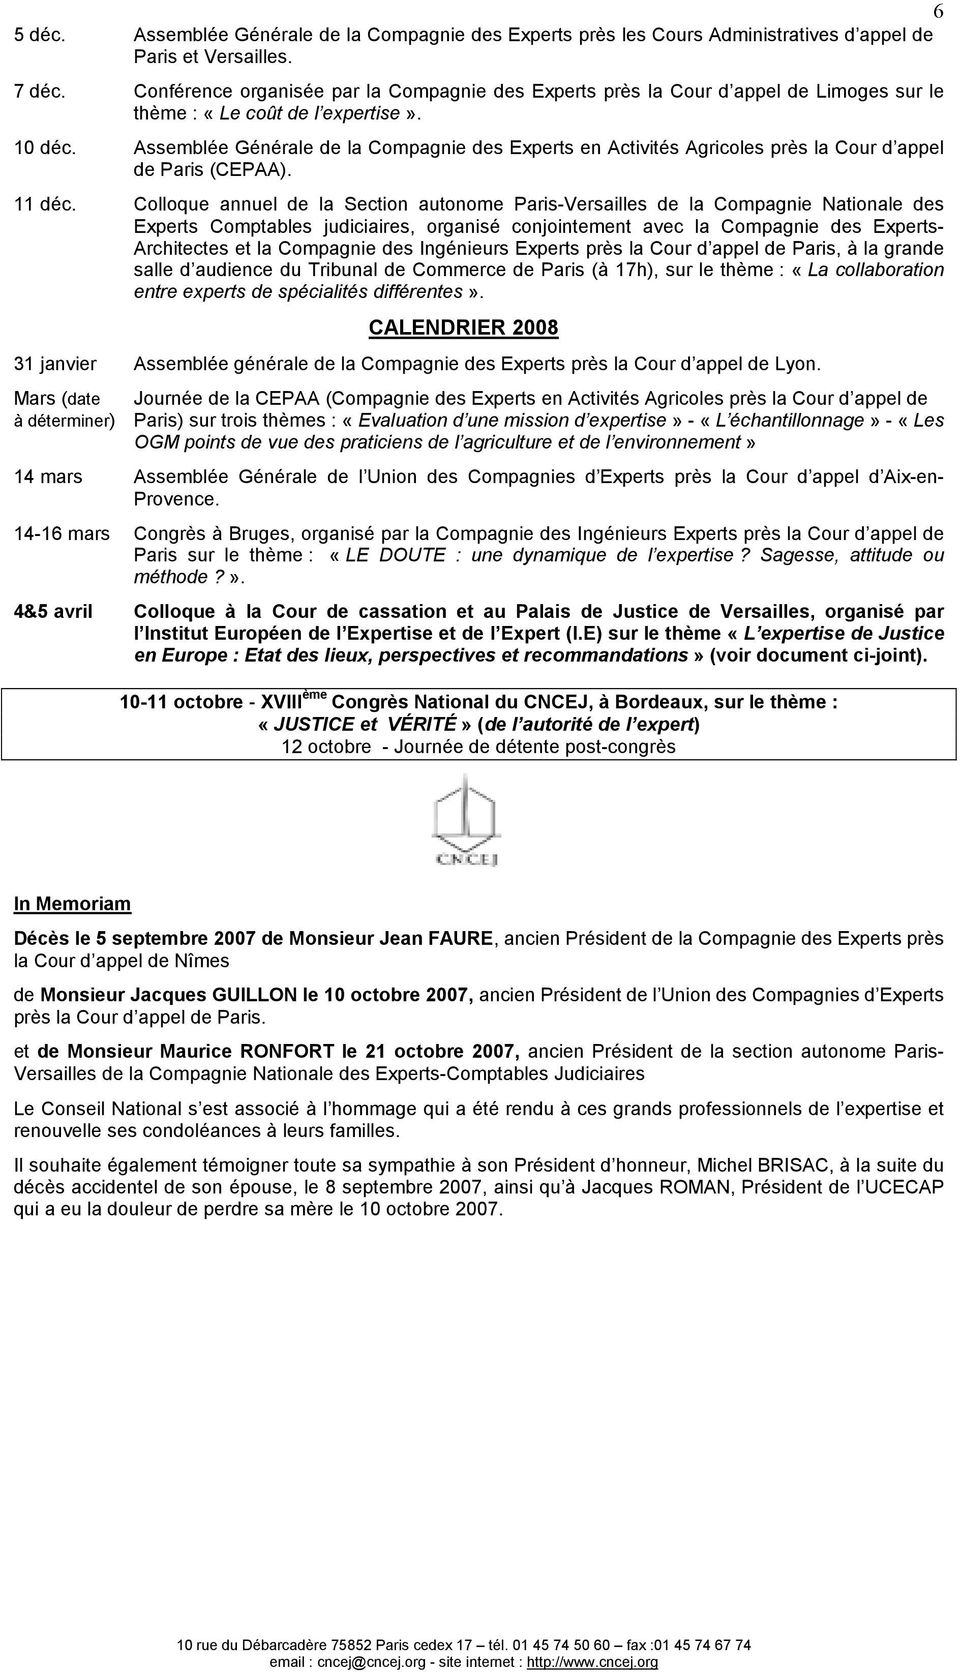 Assemblée Générale de la Compagnie des Experts en Activités Agricoles près la Cour d appel de Paris (CEPAA). 11 déc.